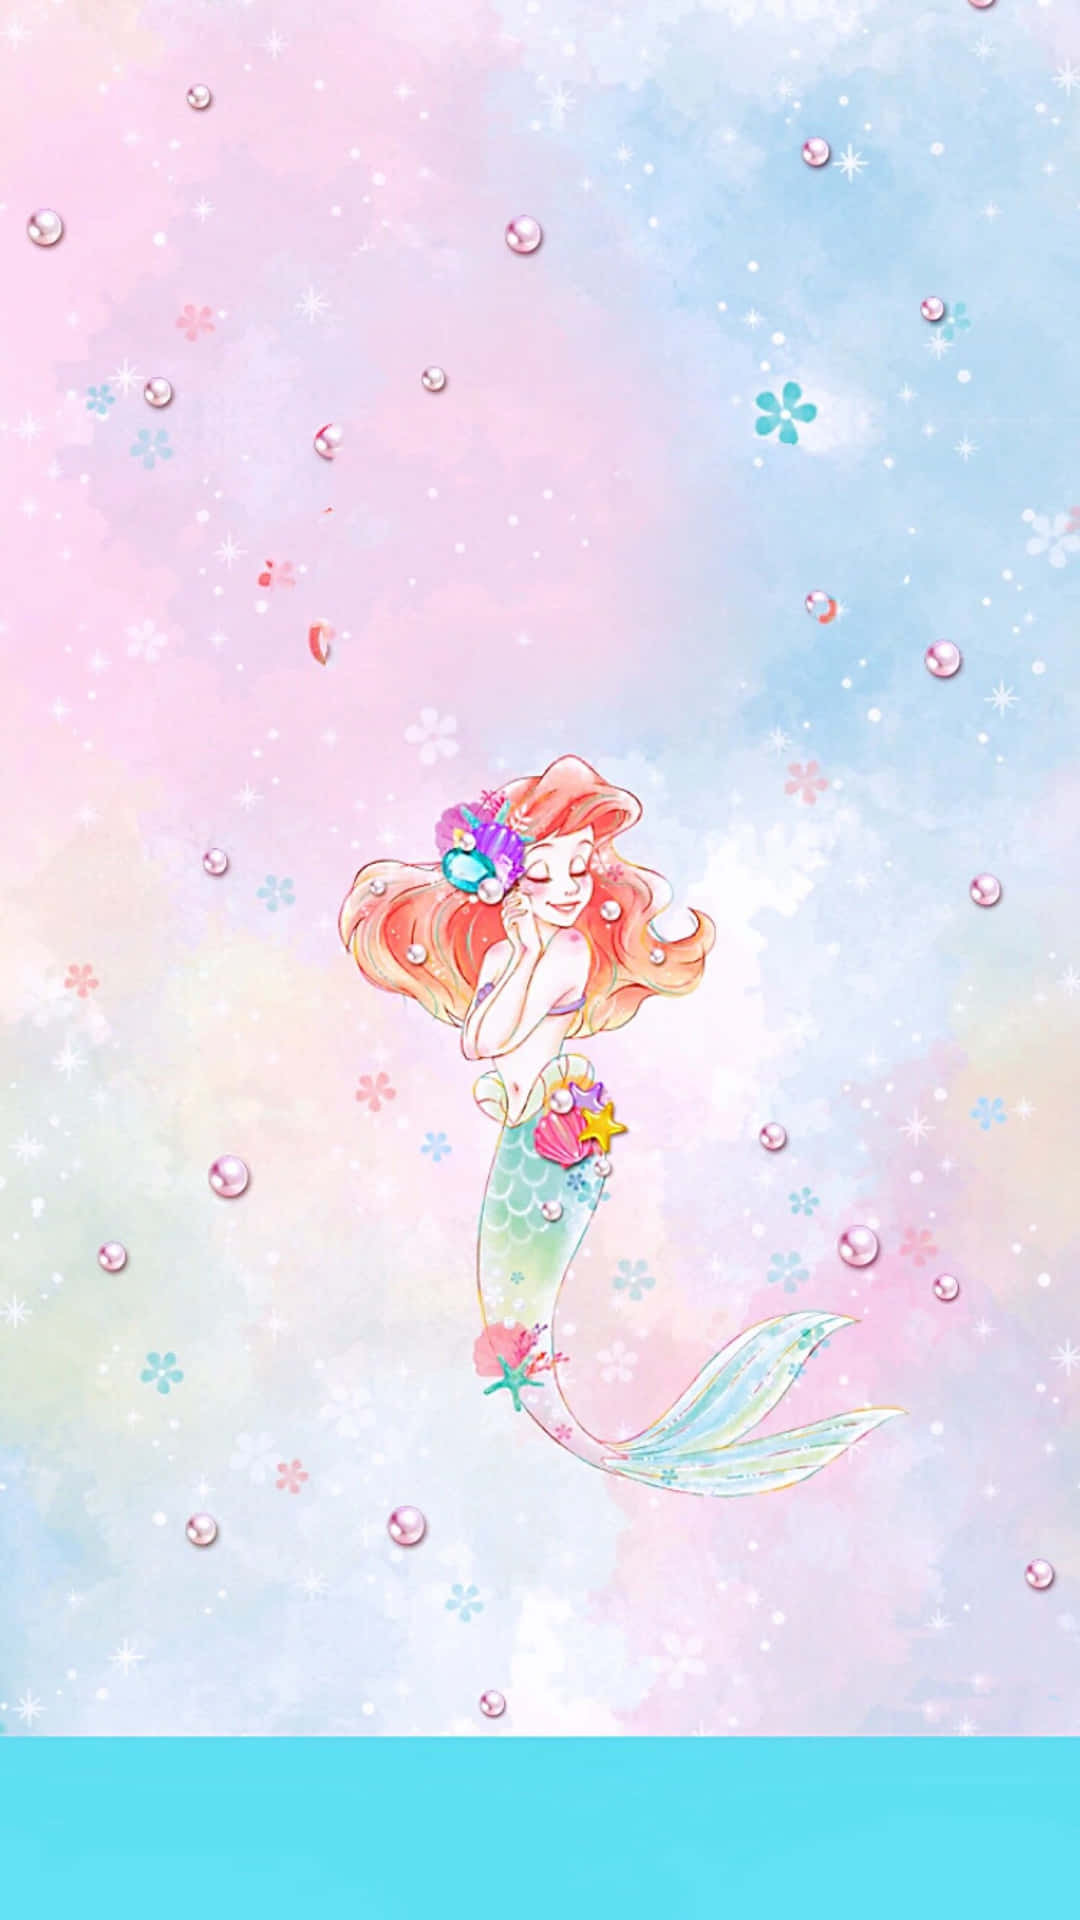 Cute Mermaid Ariel Digital Drawing Wallpaper